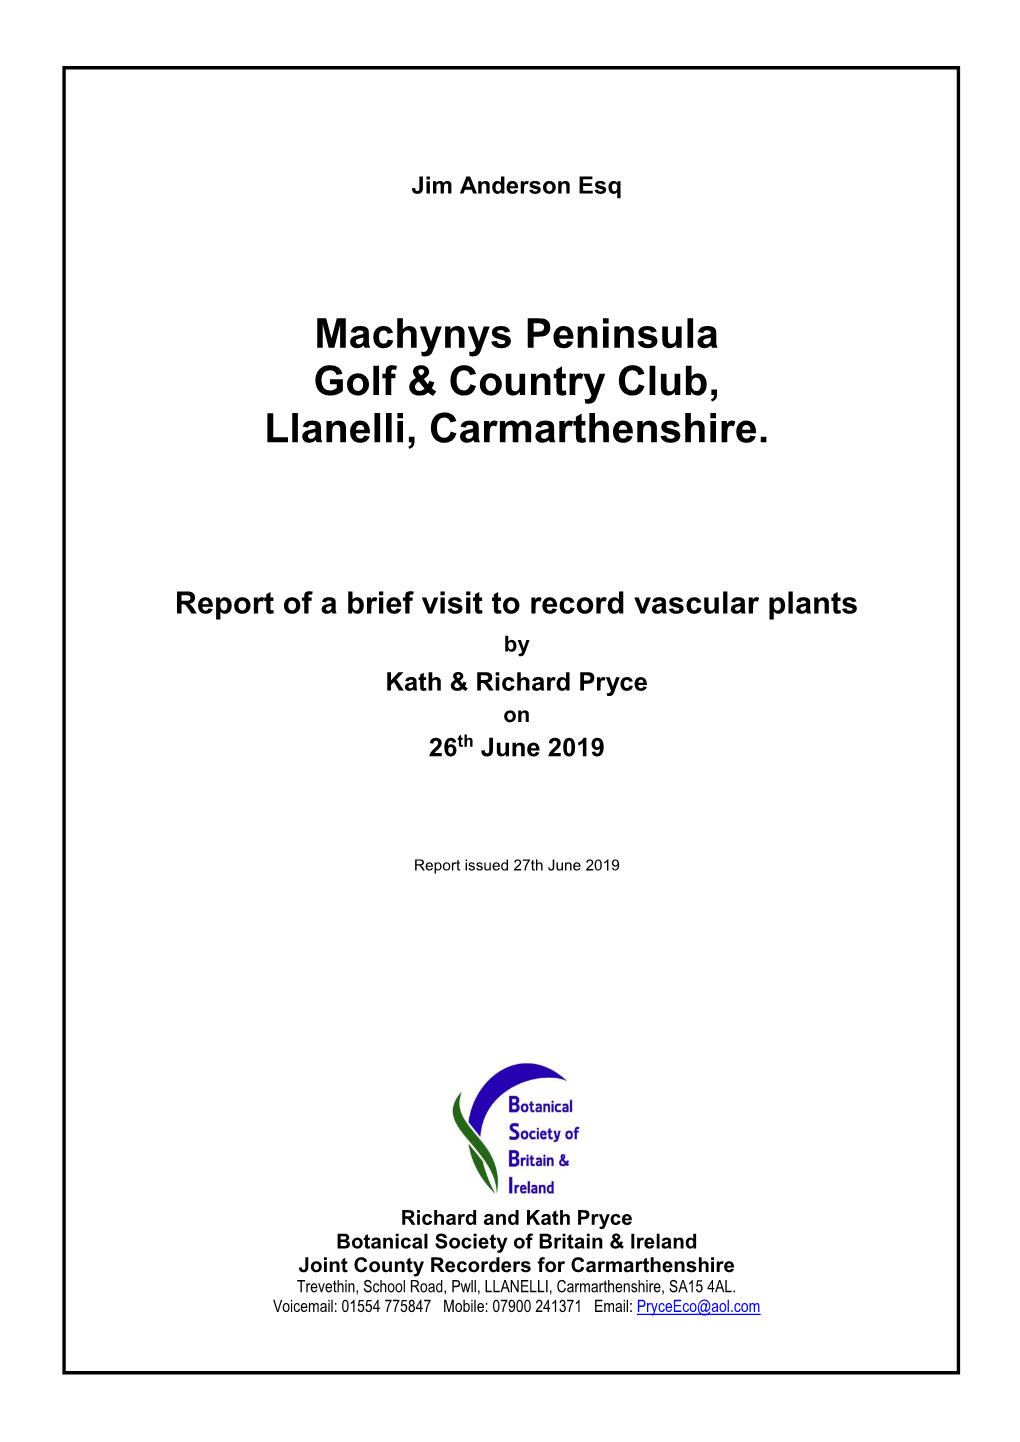 Machynys Peninsula Golf & Country Club, Llanelli, Carmarthenshire